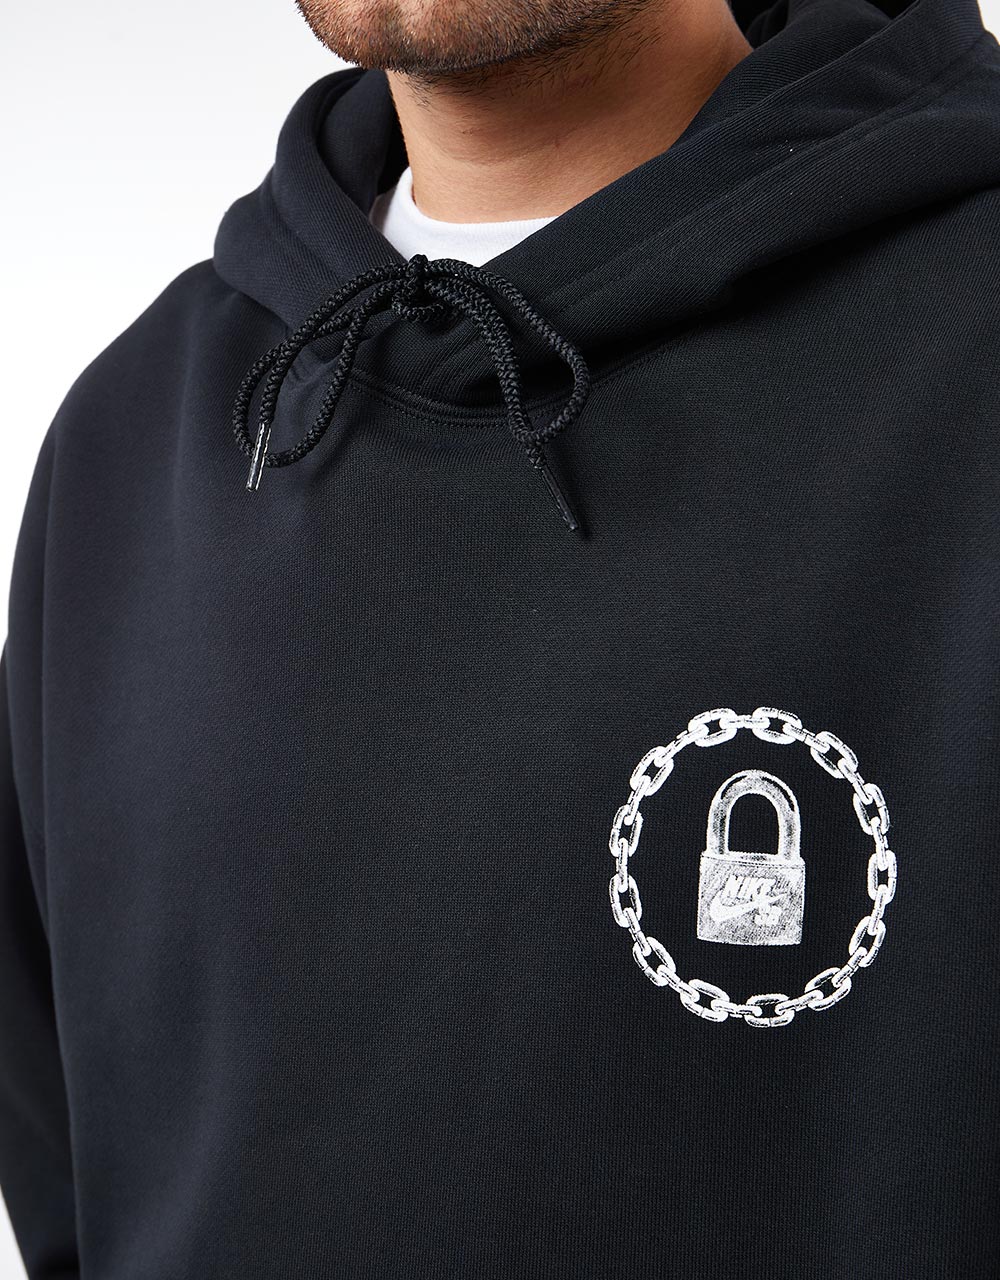 Nike SB On Lock Pullover Hoodie - Black